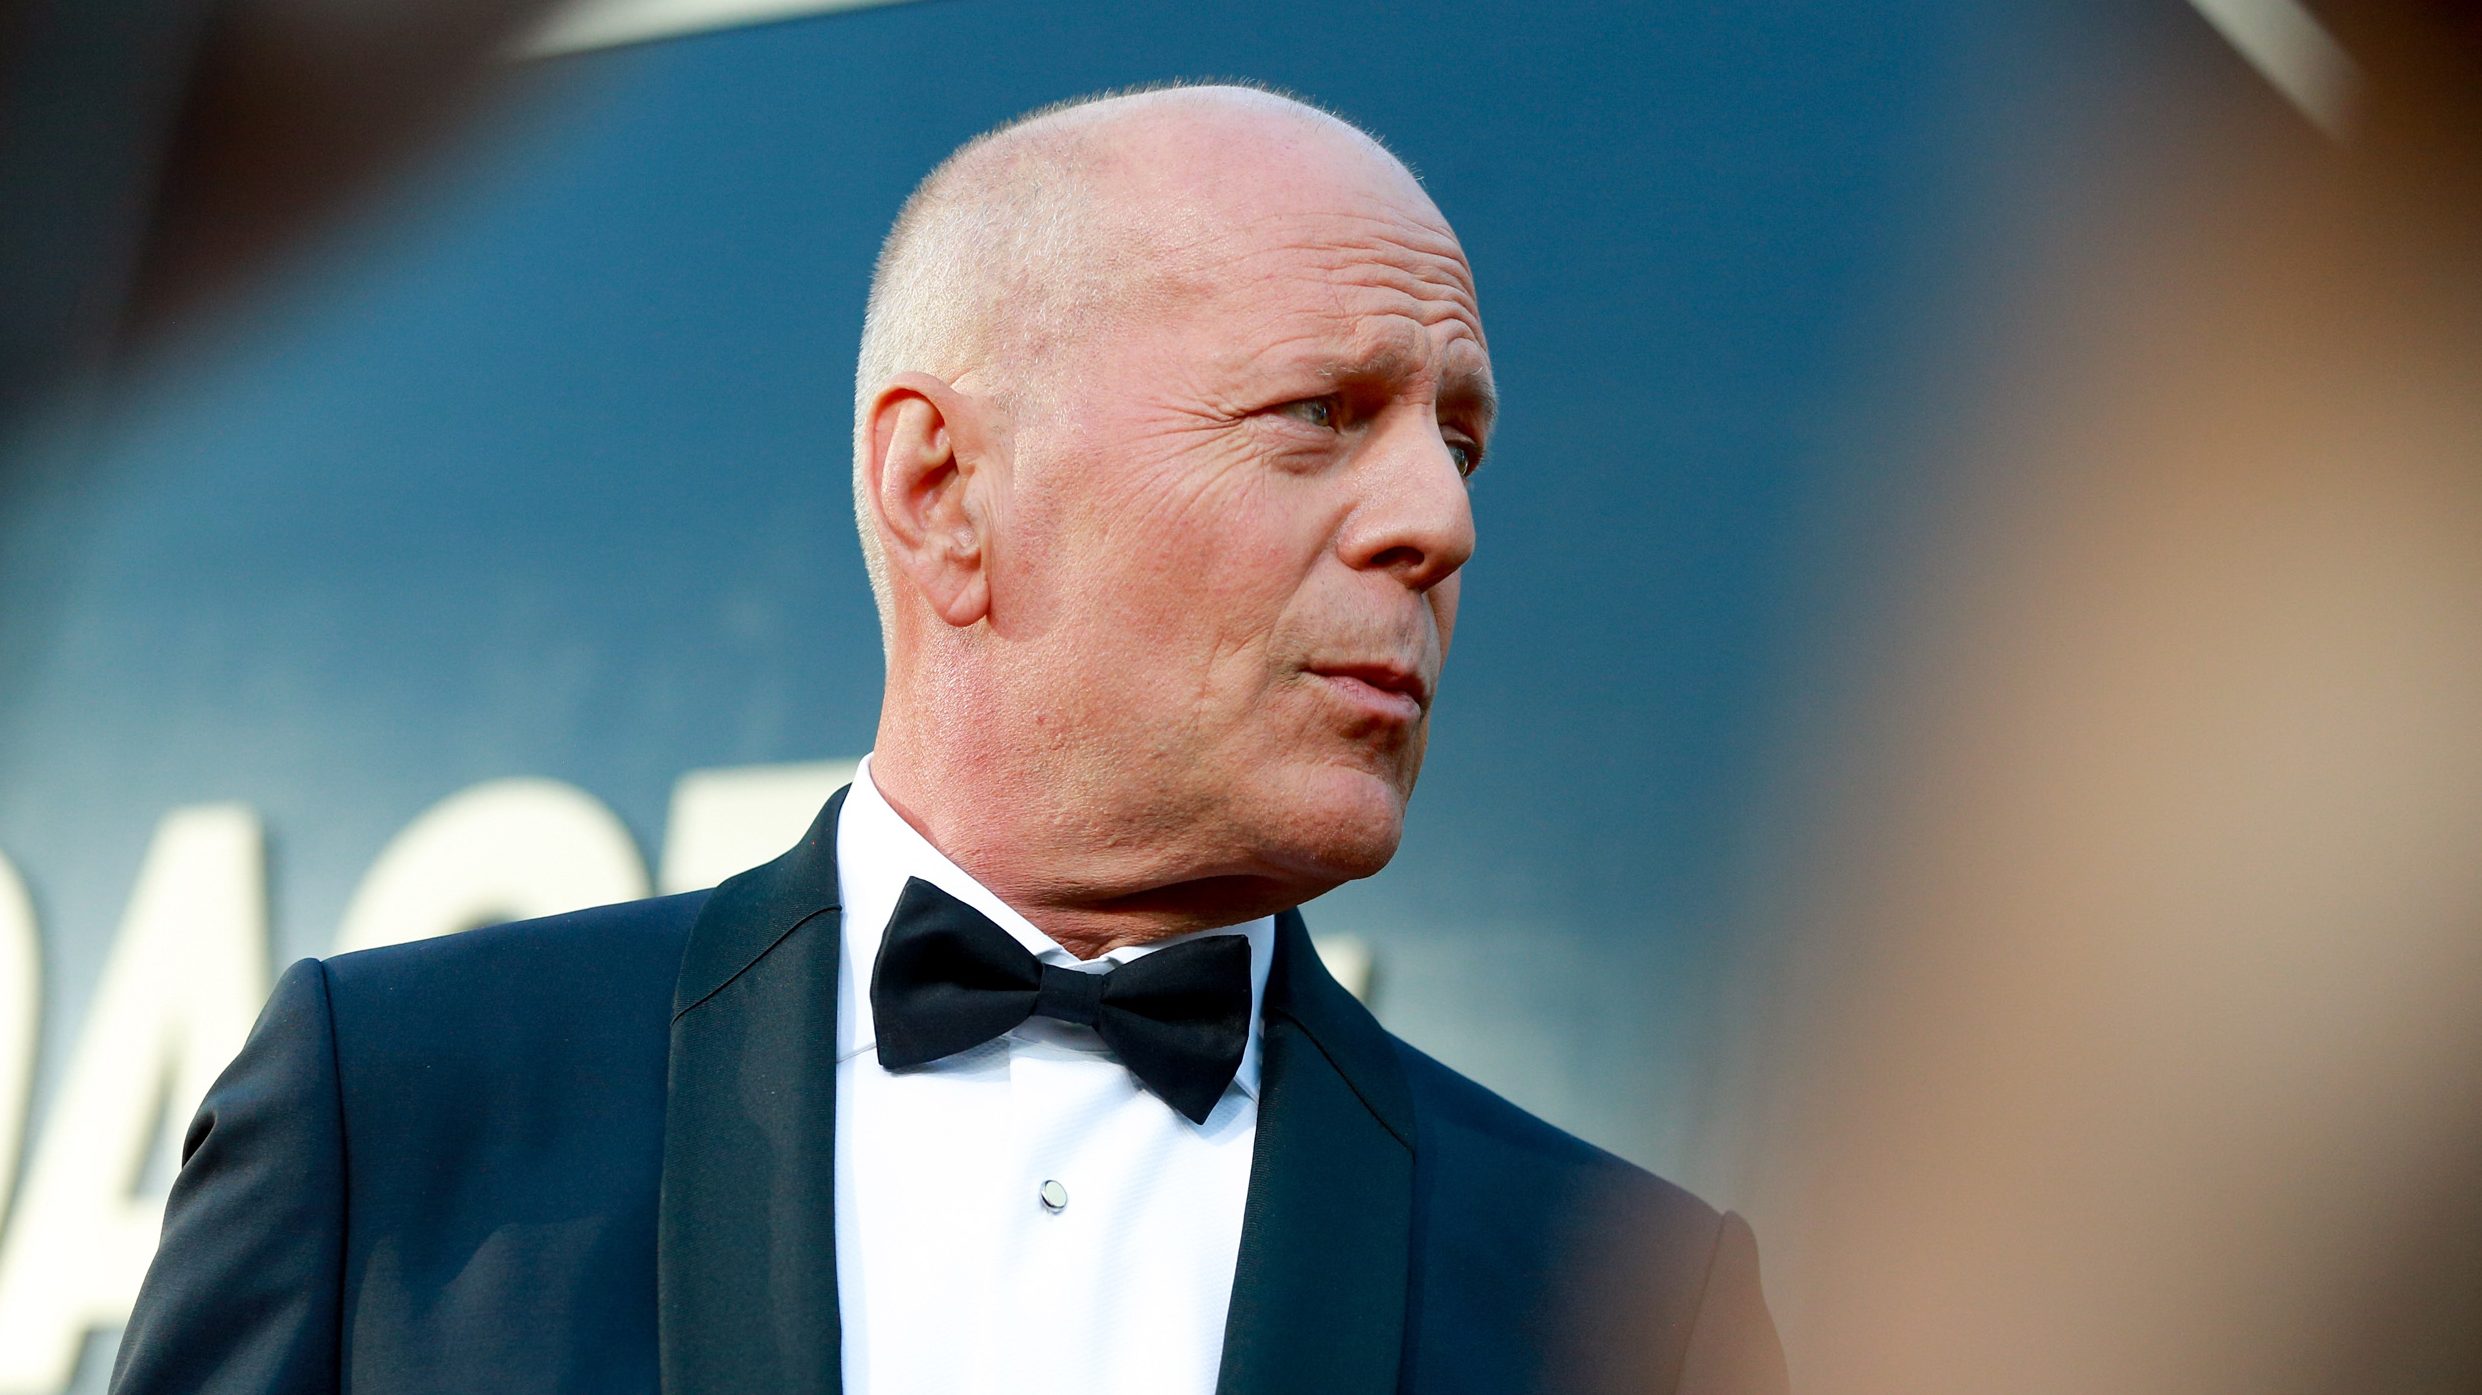 Nőtt a tudatosság az afáziával kapcsolatban Bruce Willis miatt